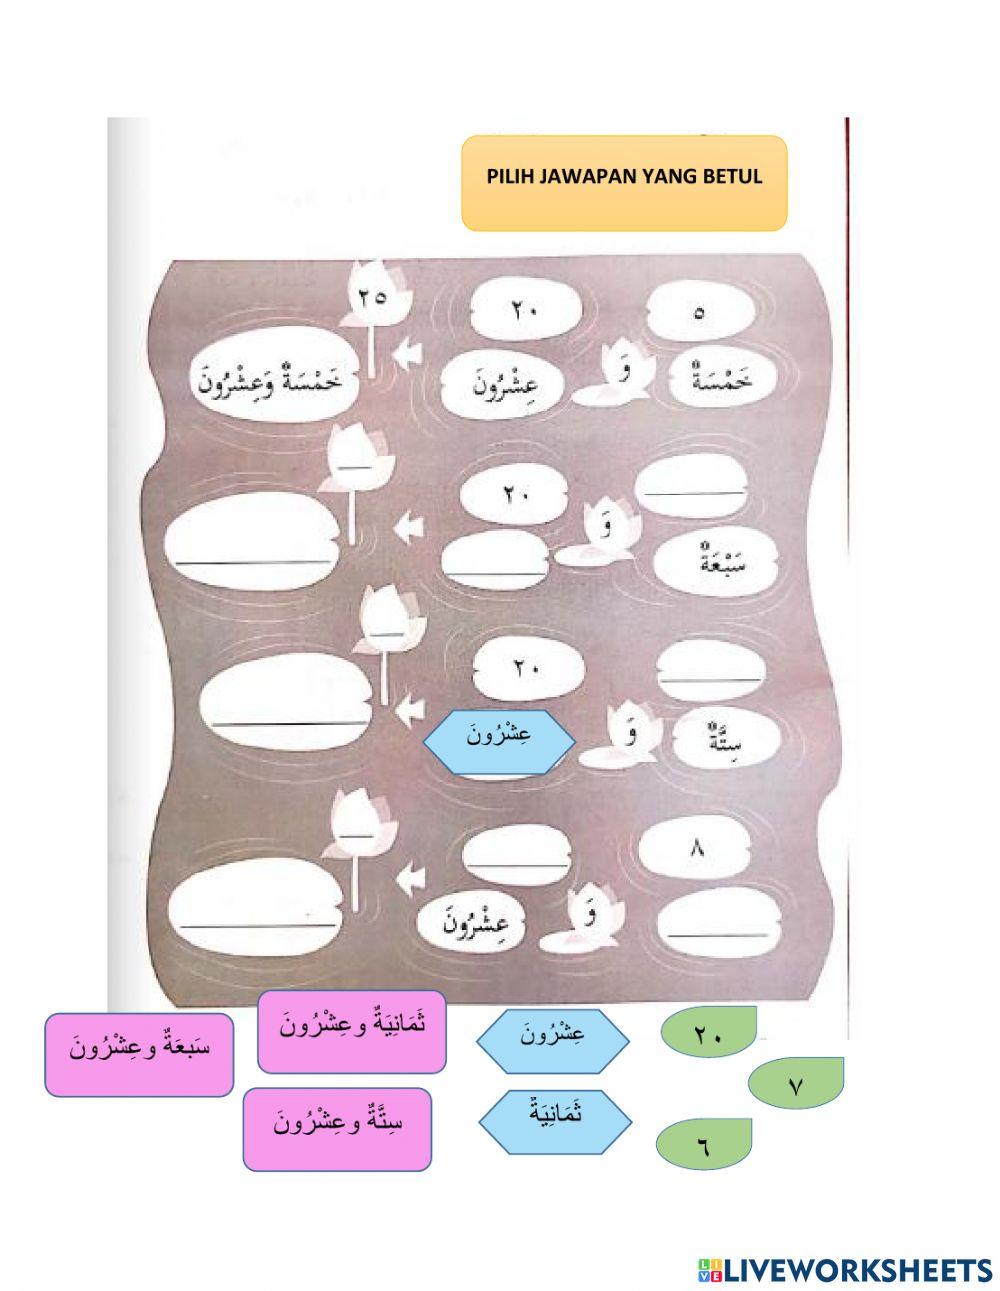 21-29 bahasa arab